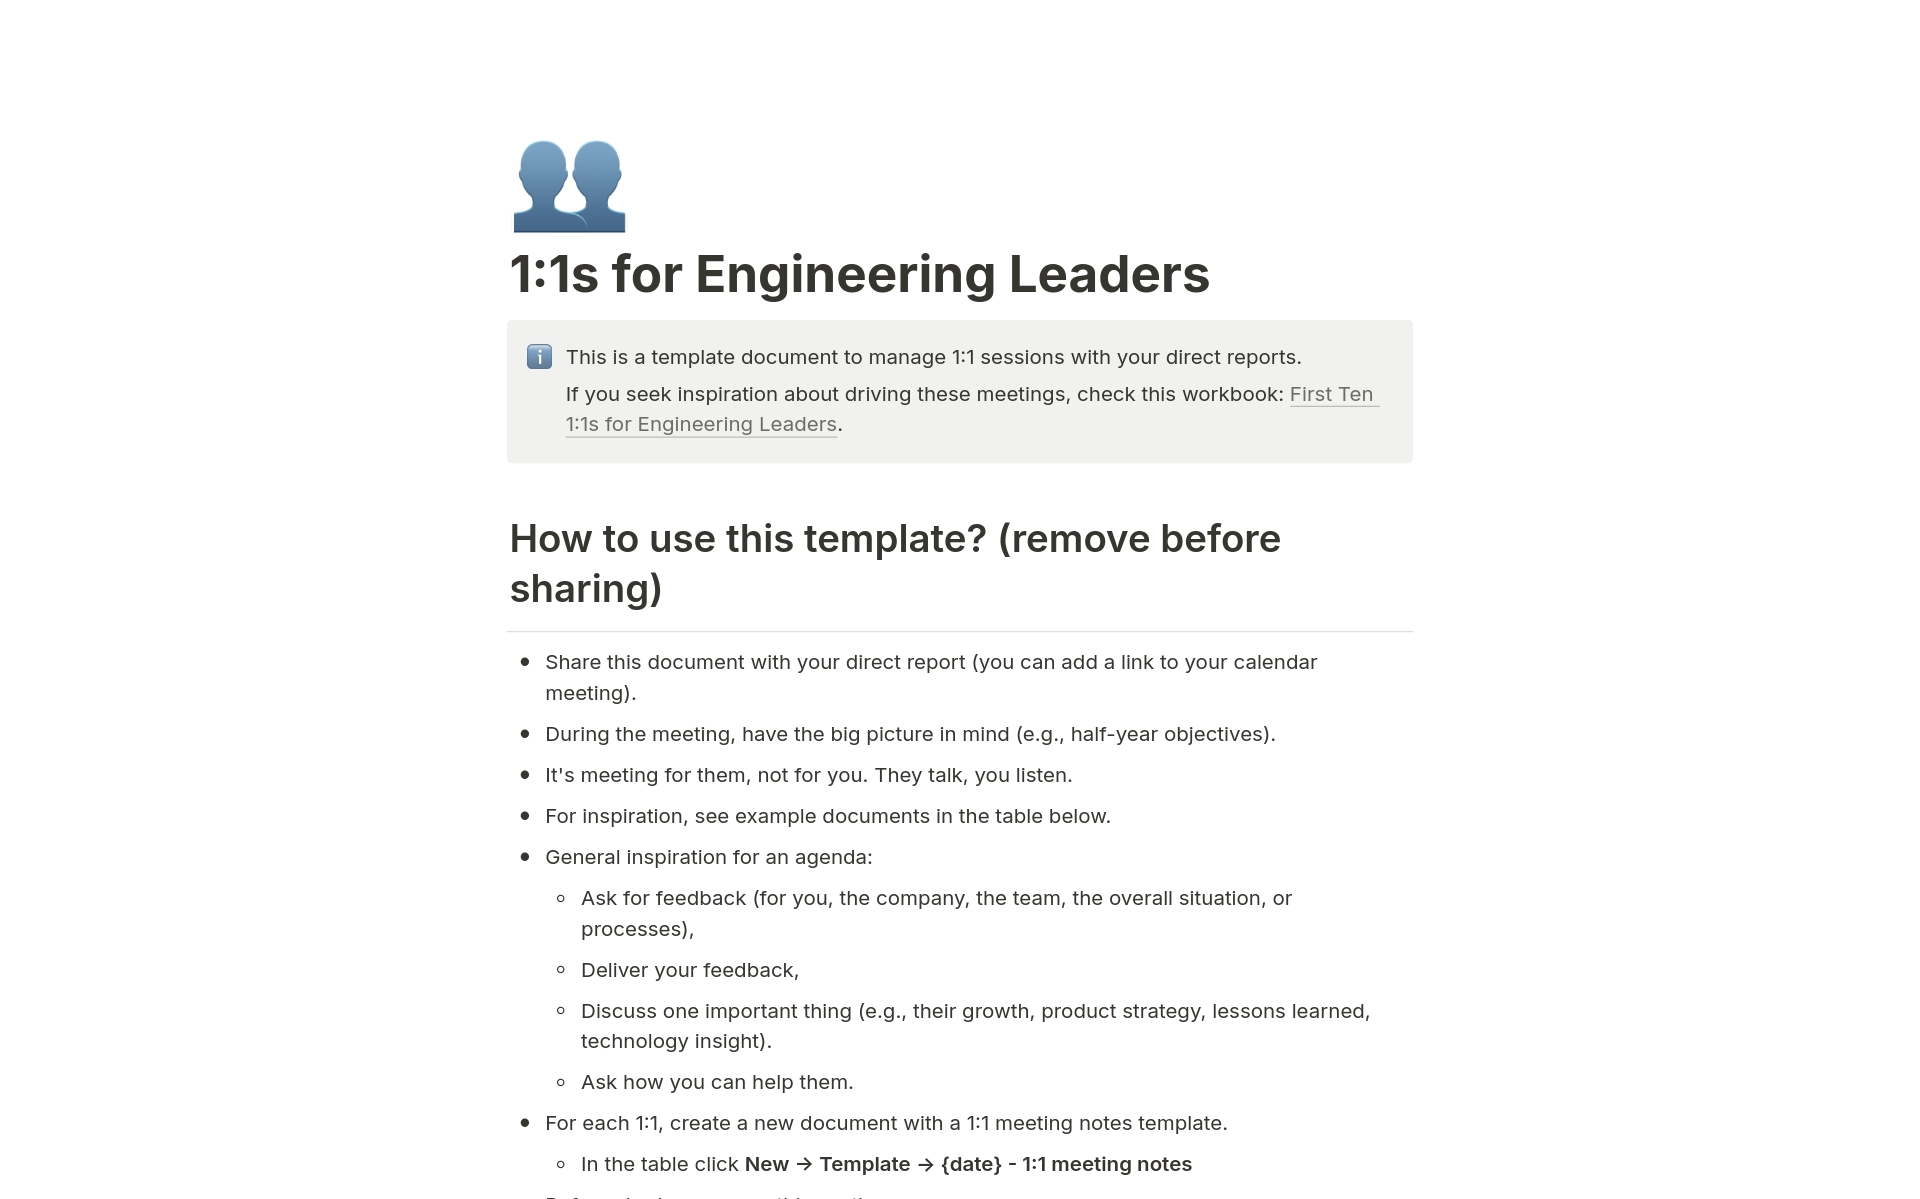 Uma prévia do modelo para 1:1s for Engineering Leaders